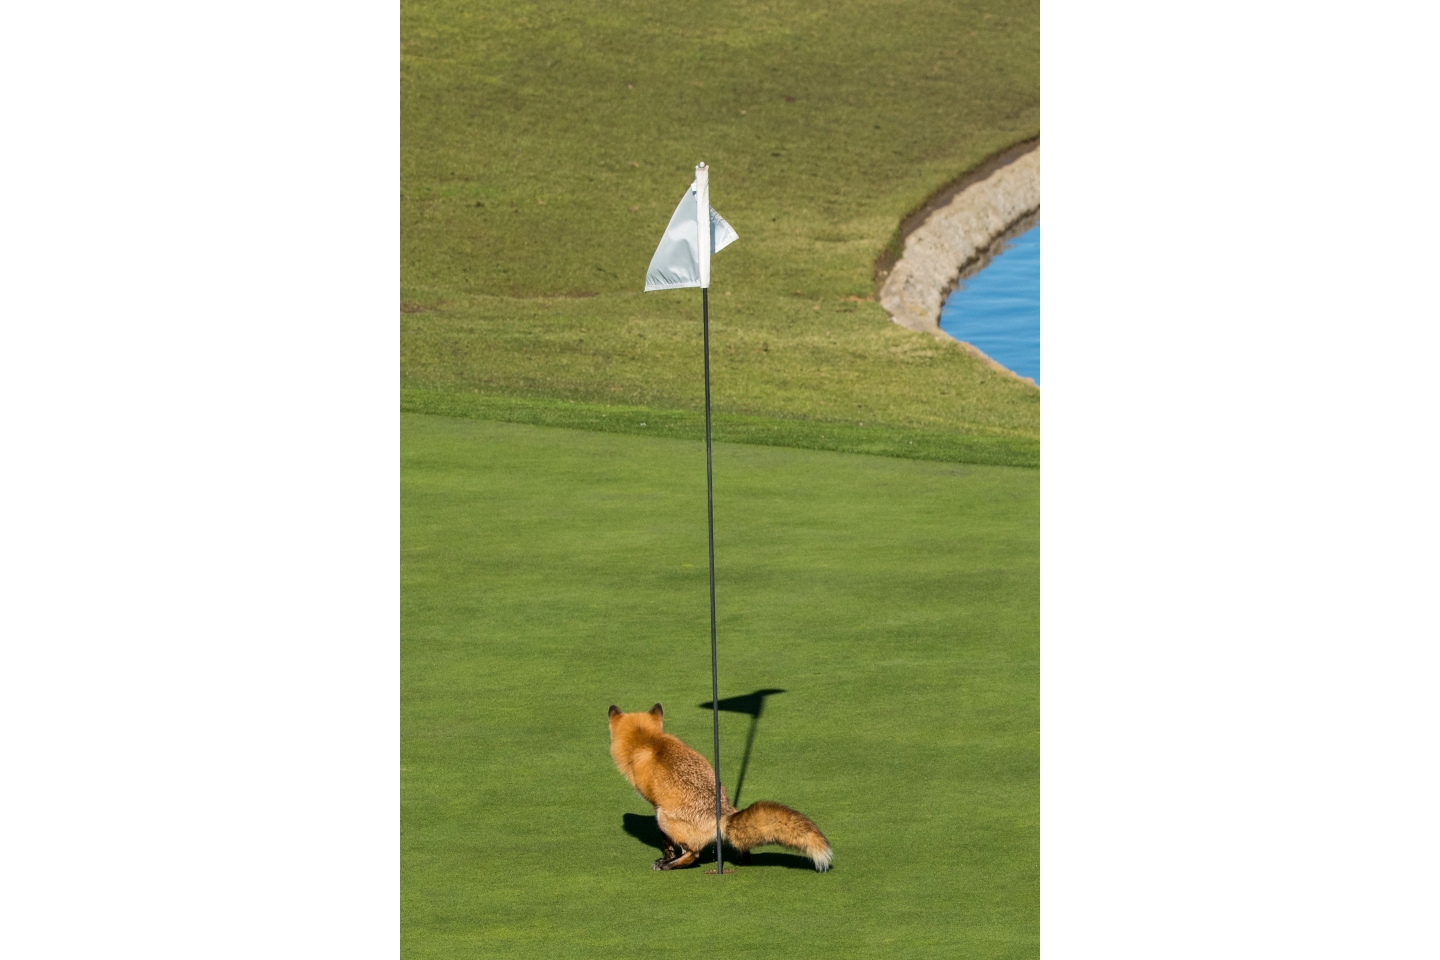 "Перехитрила". Дуглас Крофт был высоко оценен за его фотографию этой нахальной лисы, забивающей необычно лунку в одном в Сан-Хосе, США. Лиса на поле для гольфа в качестве личного туалета. Фото: Douglas Croft 